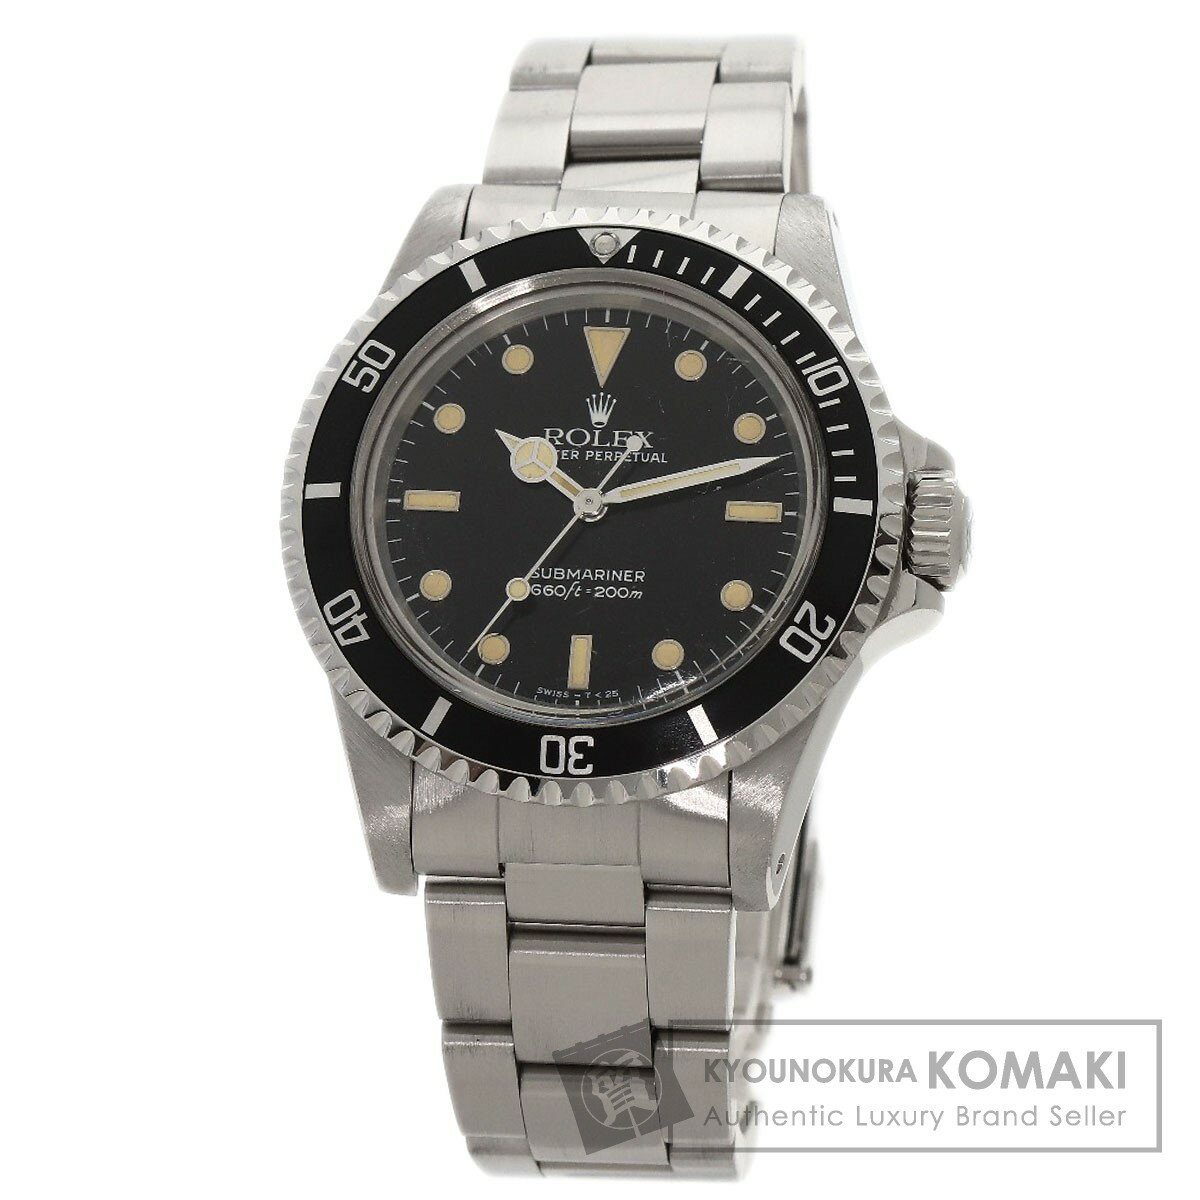 ロレックス 5513 サブマリーナ トリチウム 腕時計 OH済 ステンレススチール/SS メンズ 【中古】【ROLEX】